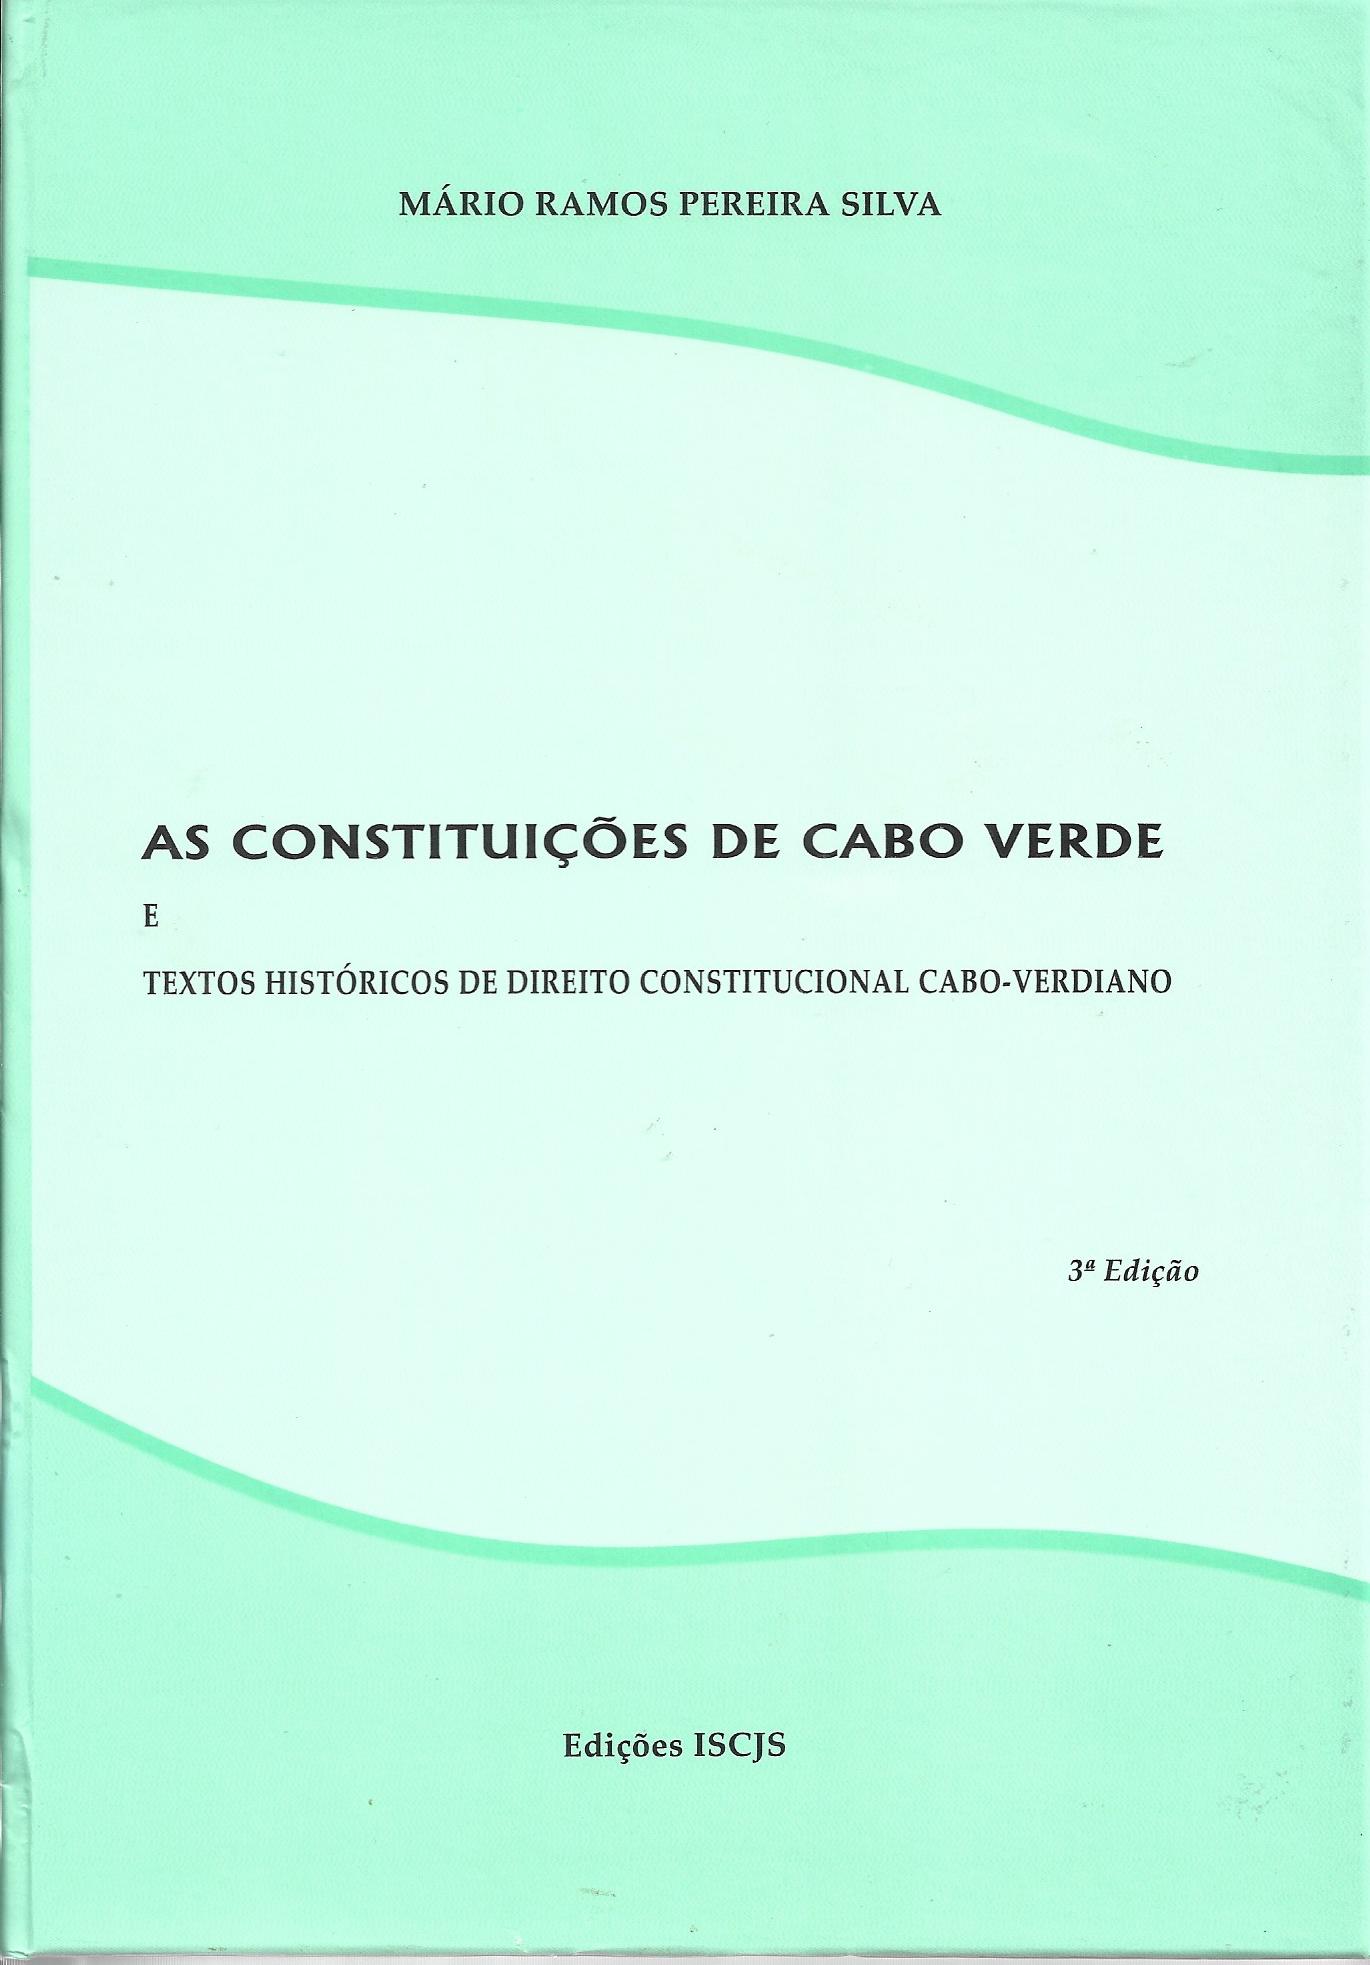 As Constituições de Cabo Verde e Textos Históricos de Direito Constitucional Cabo-verdiano